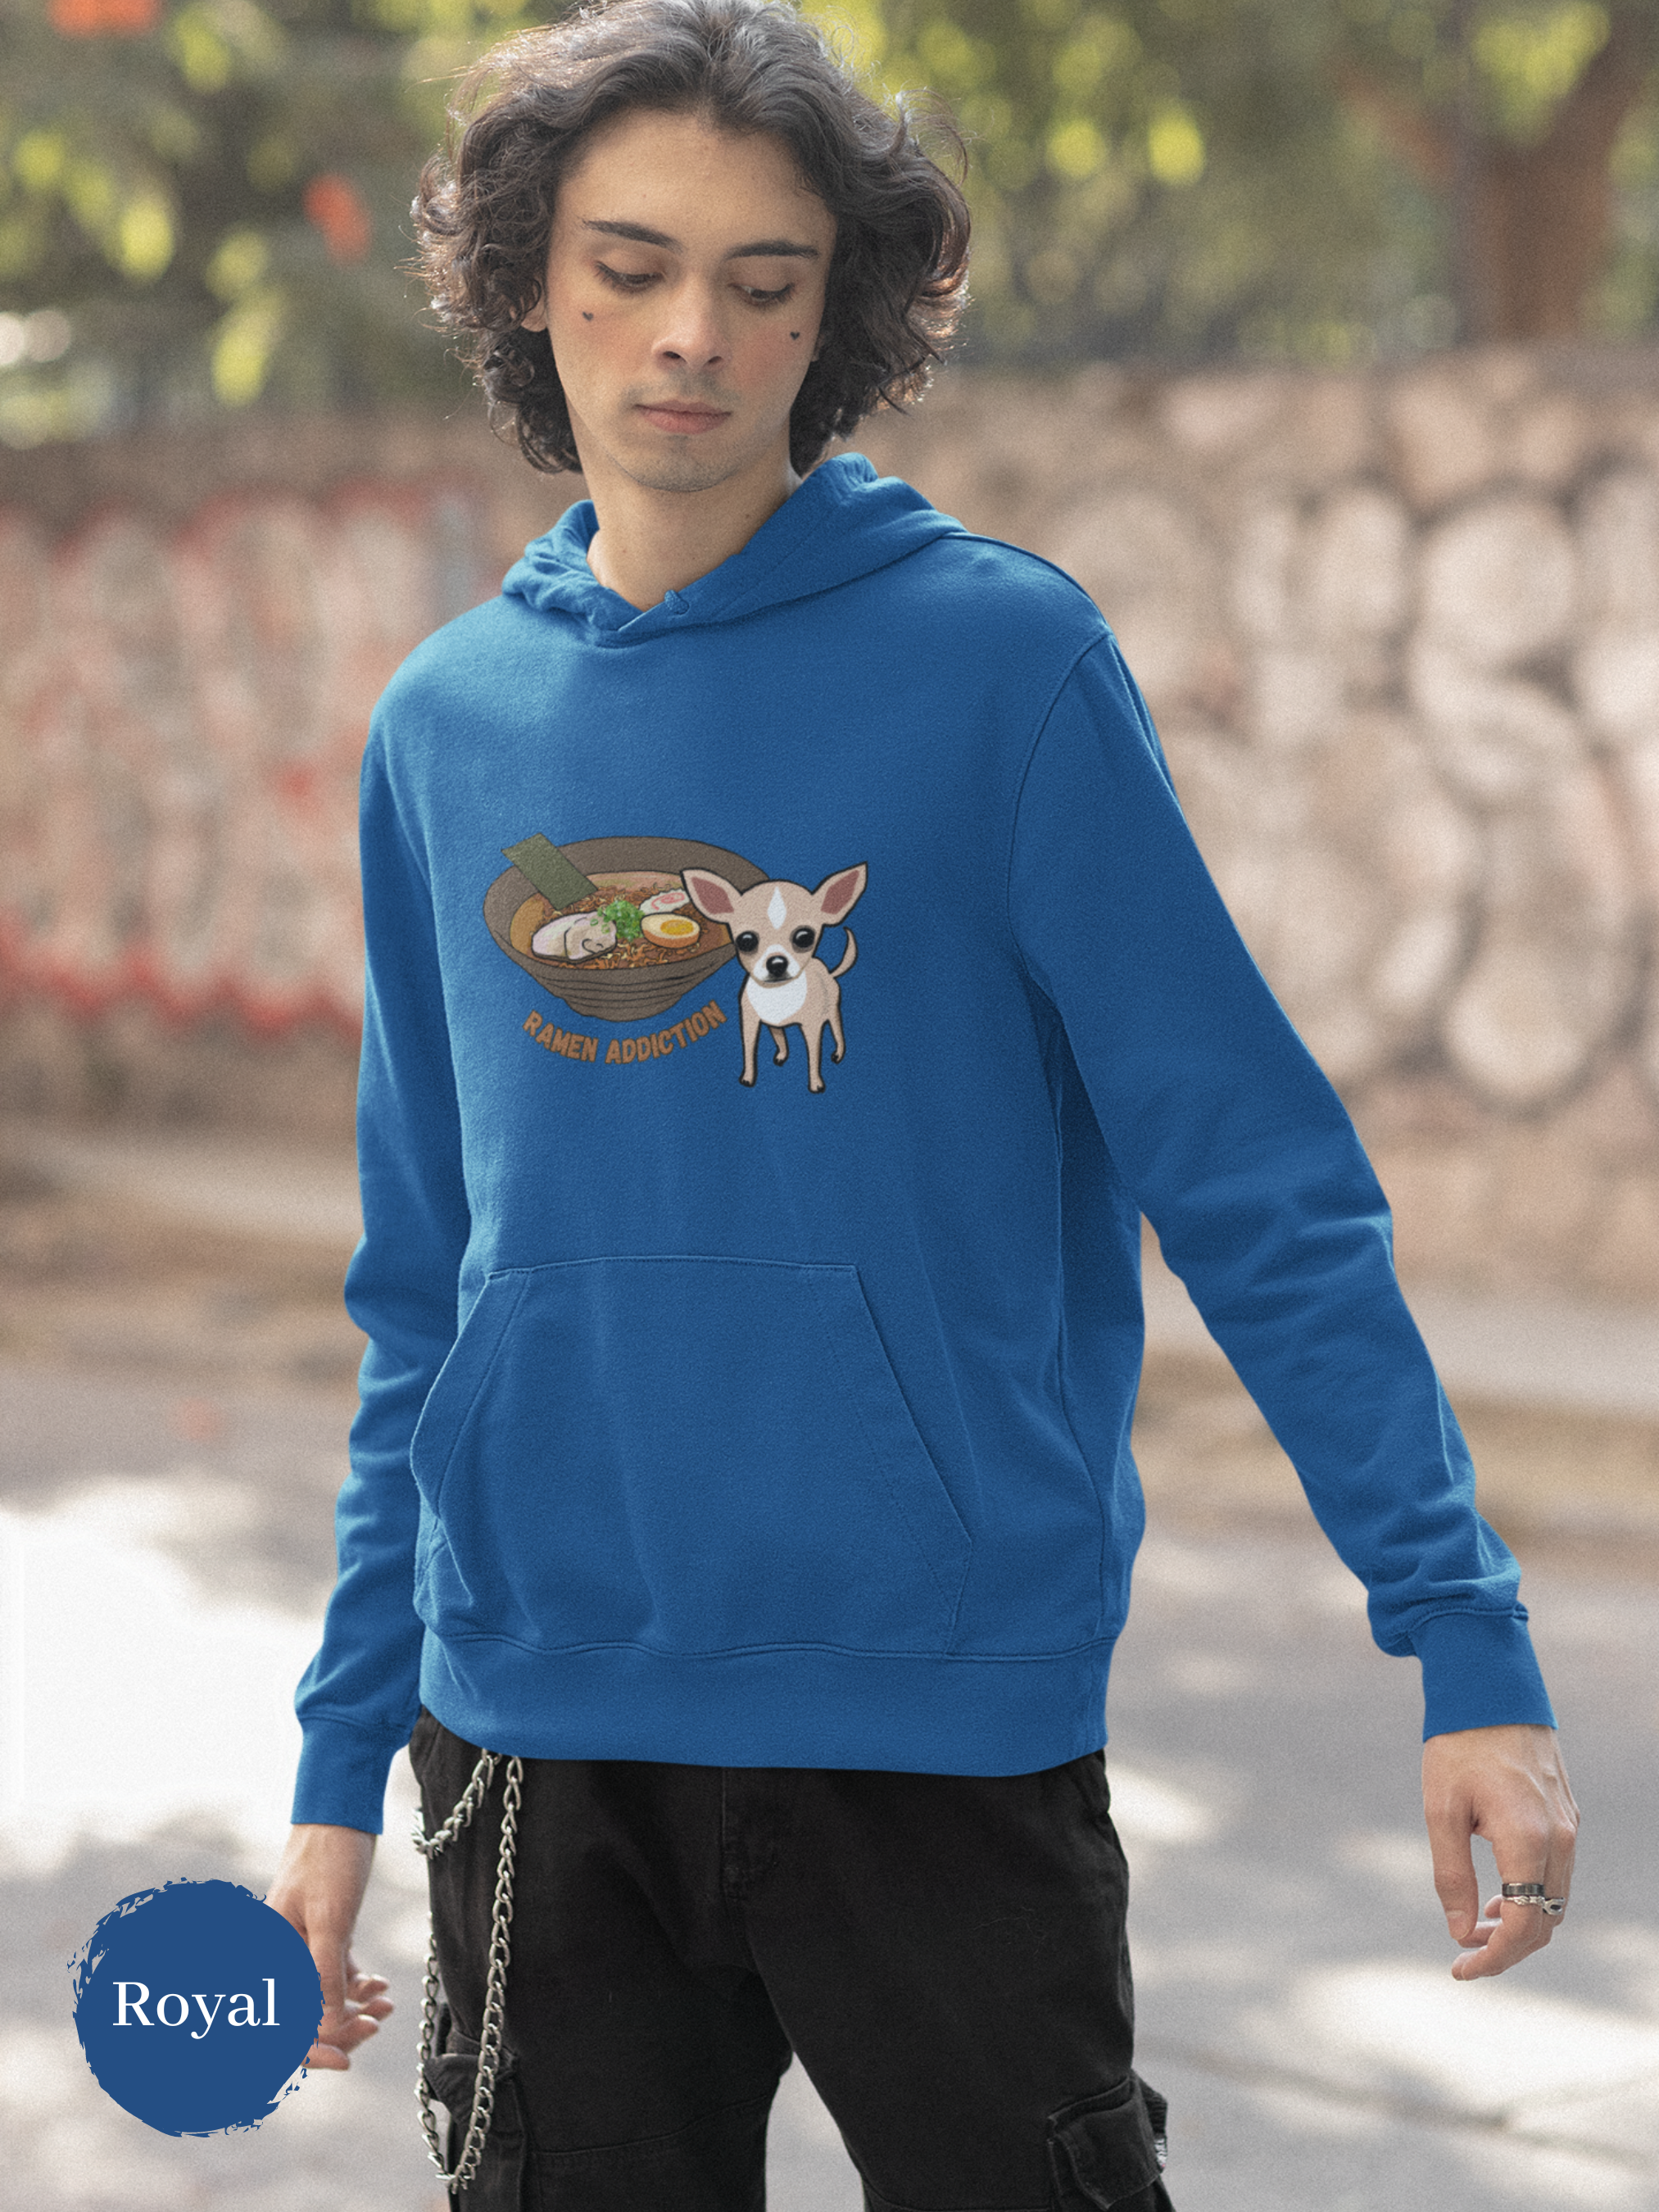 Ramen Hoodie: Chihuahua Ramen Addiction Foodie Sweatshirt with Ramen Art